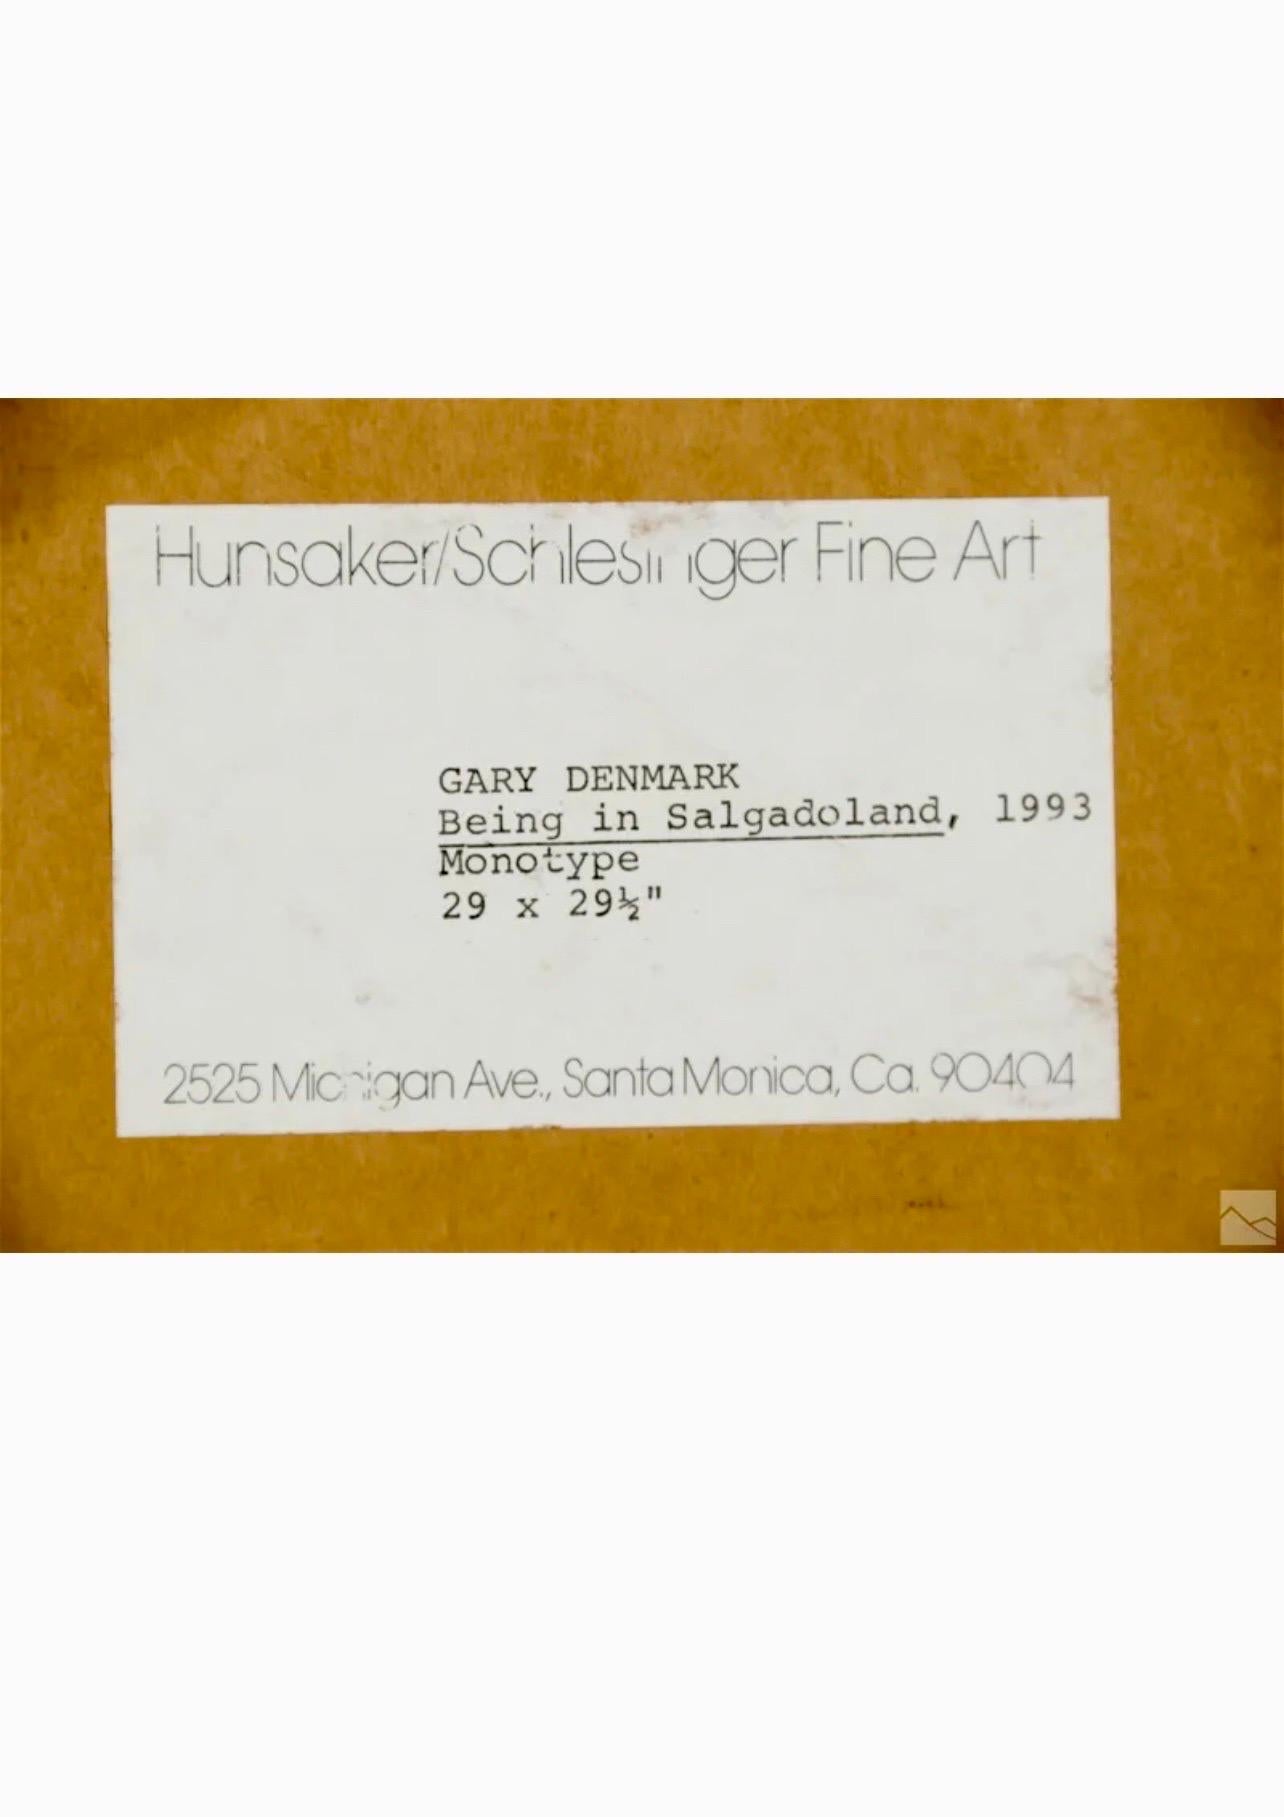 Gary Denmark (Amerikaner, geboren 1953). 
Ein Monotypie-Kunstdruck auf Arches-Papier. 
Titel: 